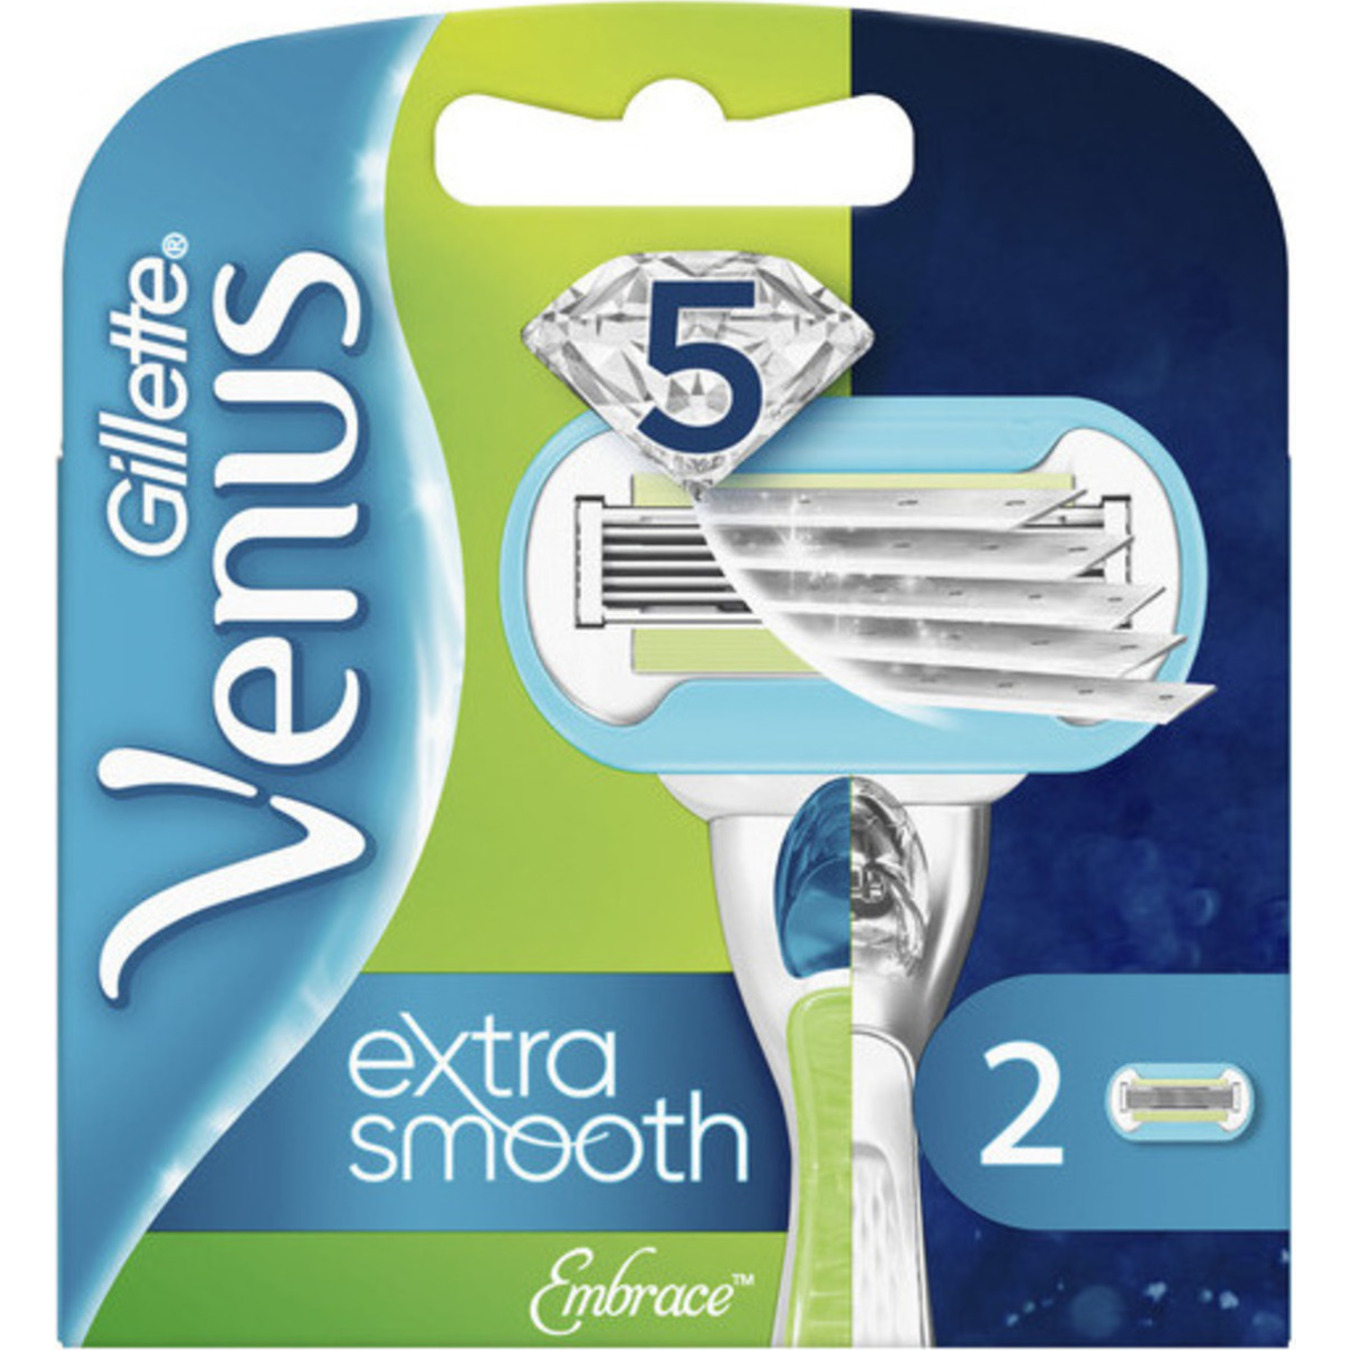 Картриджі Gillette Venus Embrace для гоління змінні 2шт